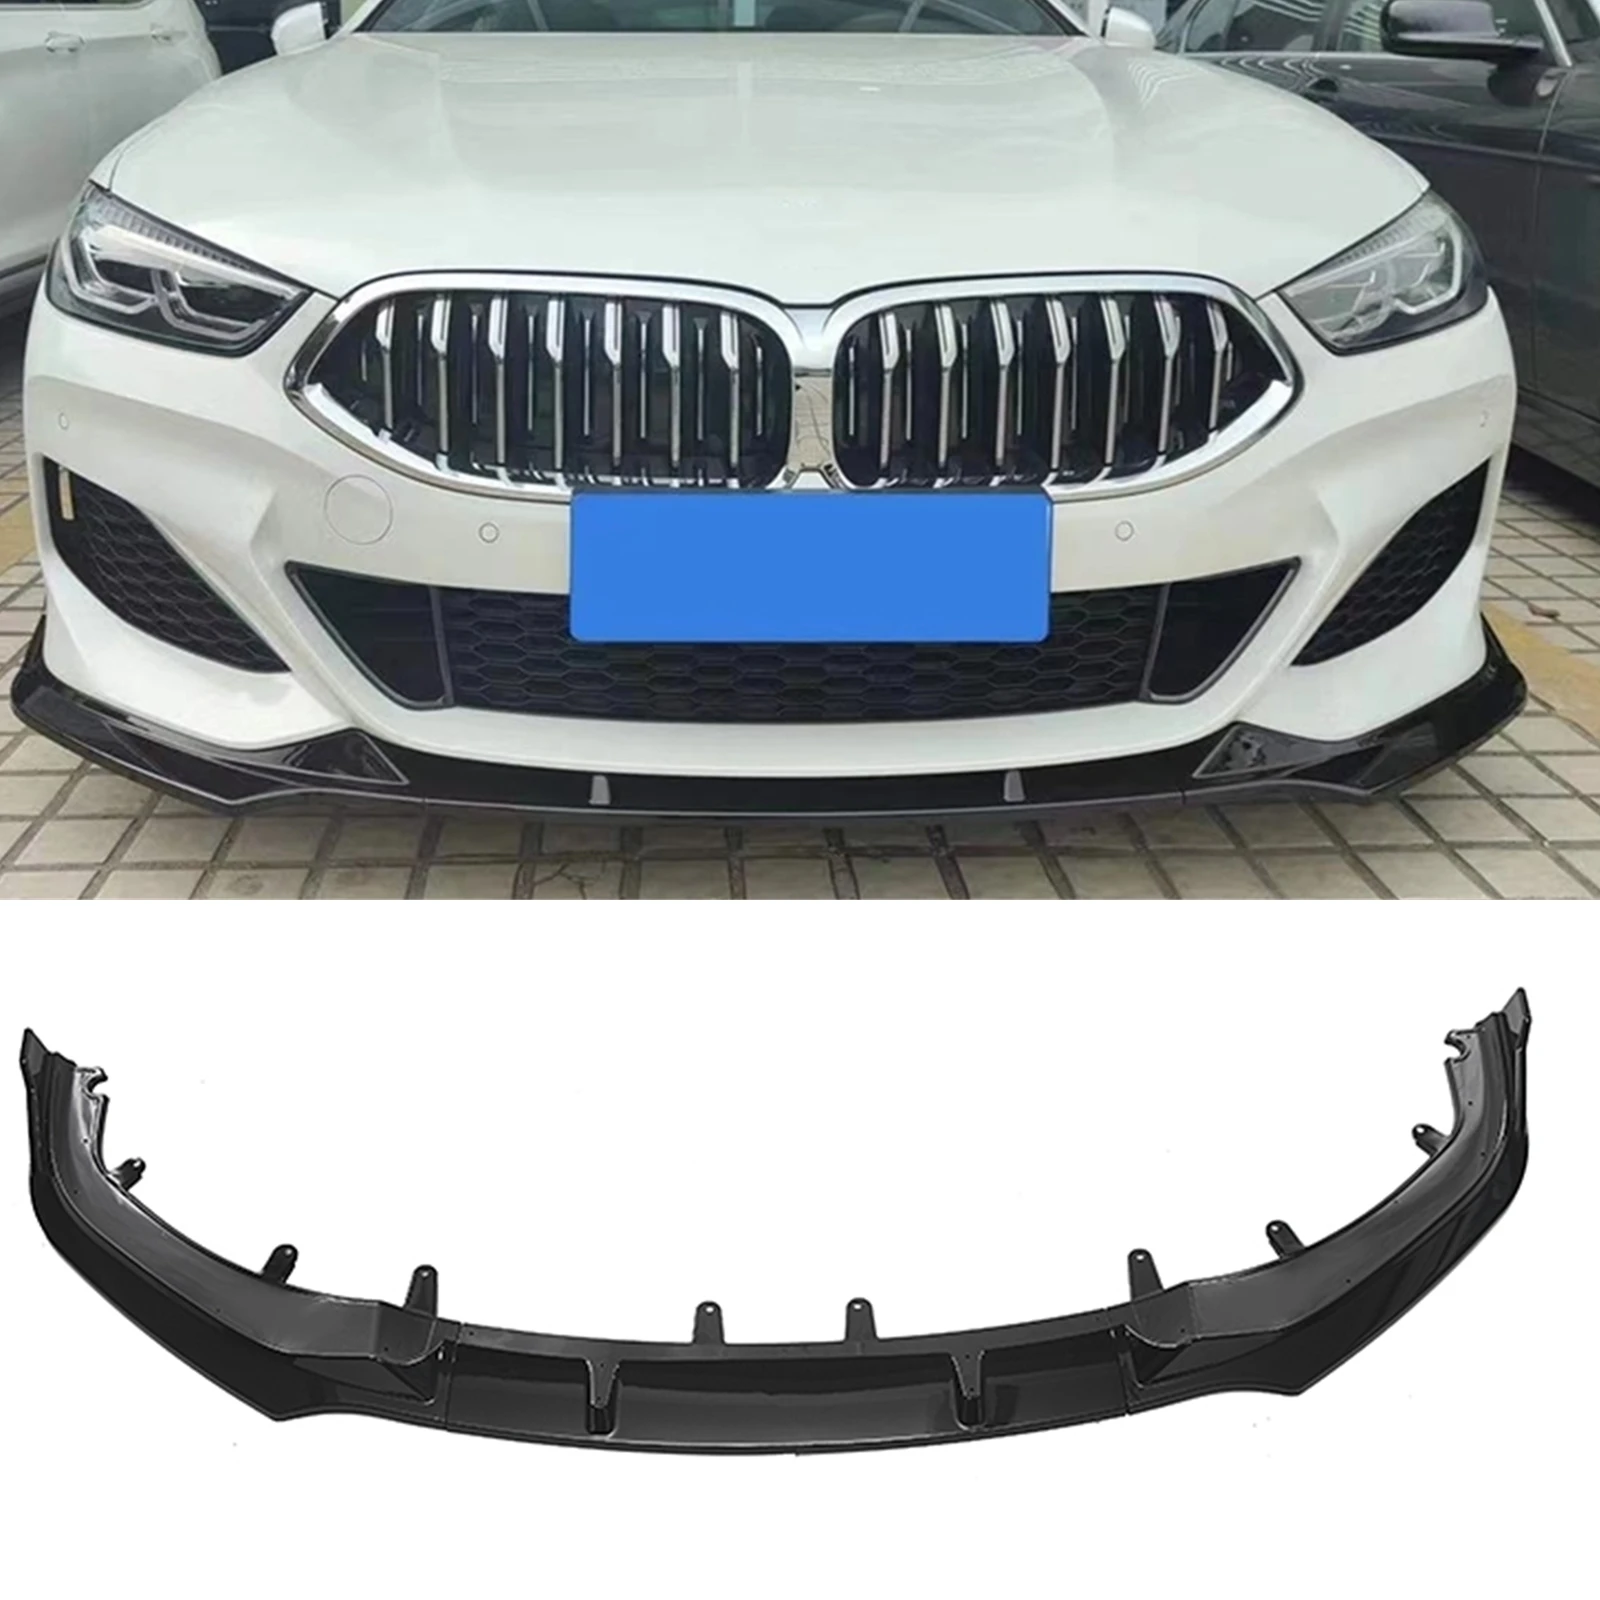 

Front Bumper Spoiler Lip For BMW 8 Series G14 G15 G16 2018-2021 840i Glossy Black Car Lower Body Kit Splitter Guard Plate Blade